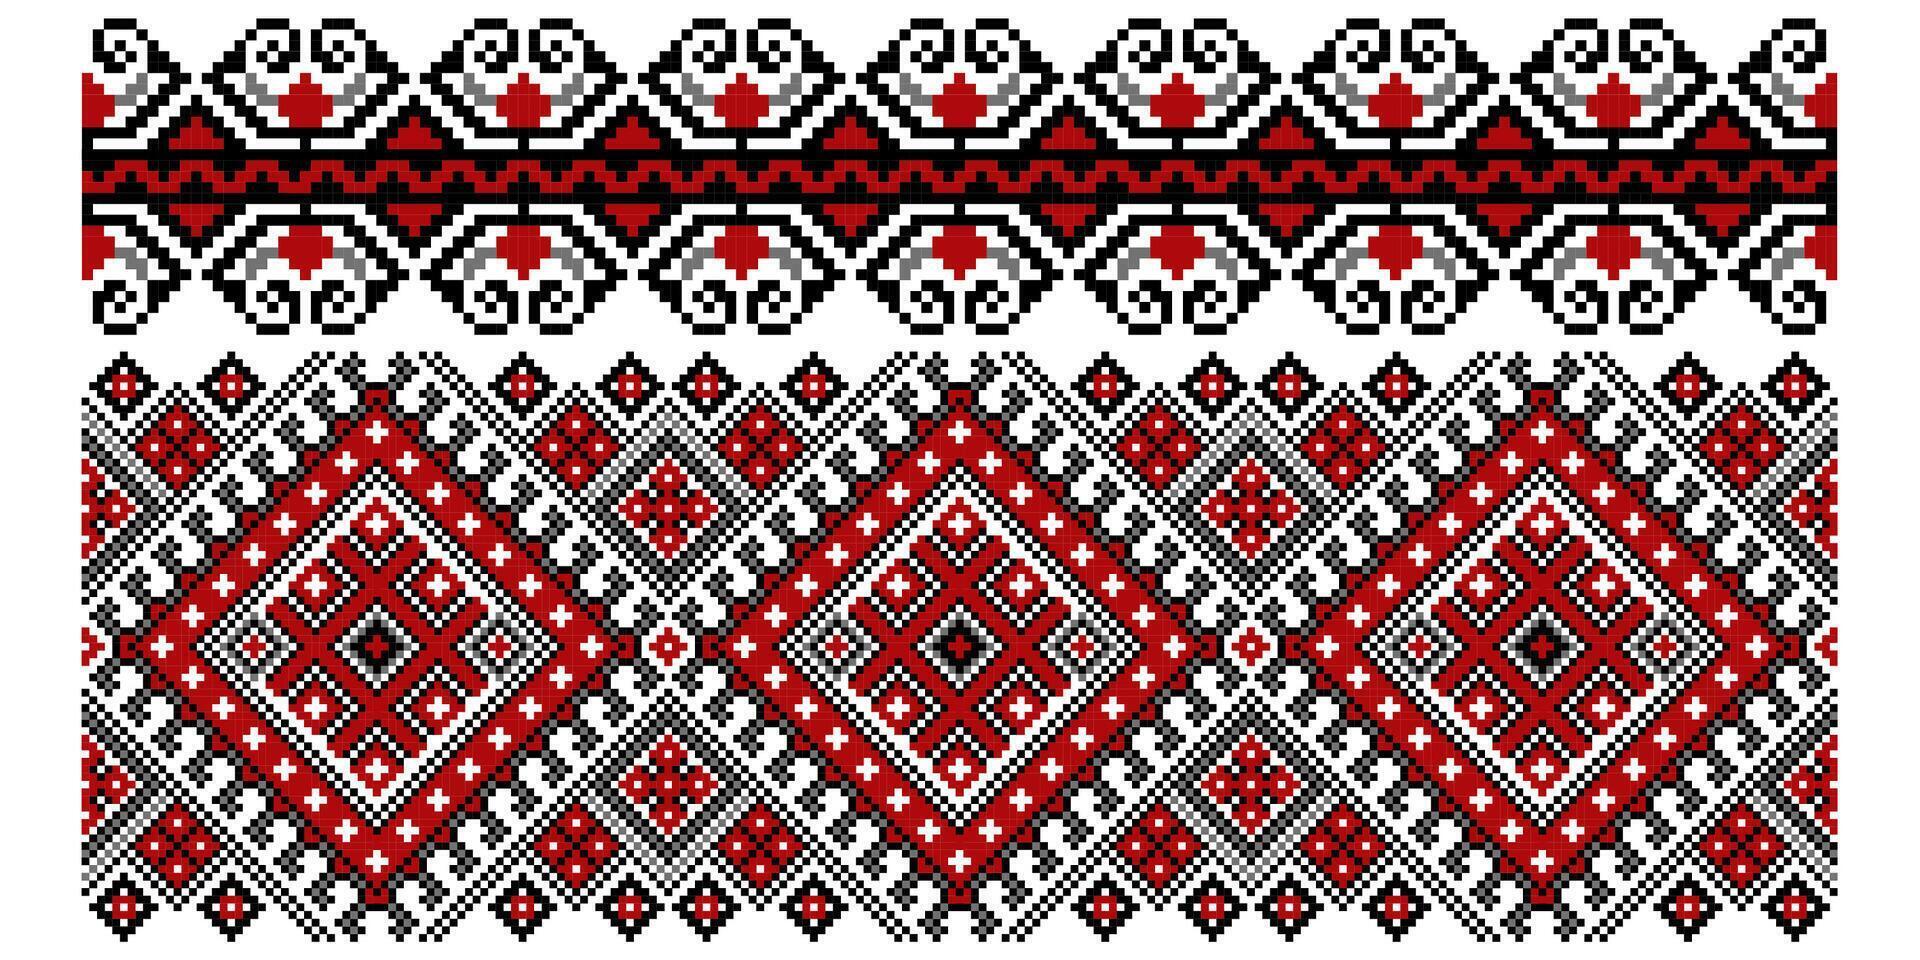 reeks van bewerkbare kleurrijk naadloos etnisch oekraïens traditioneel kruis steek patronen voor borduurwerk steek. bloemen en meetkundig ornamenten. vector illustratie